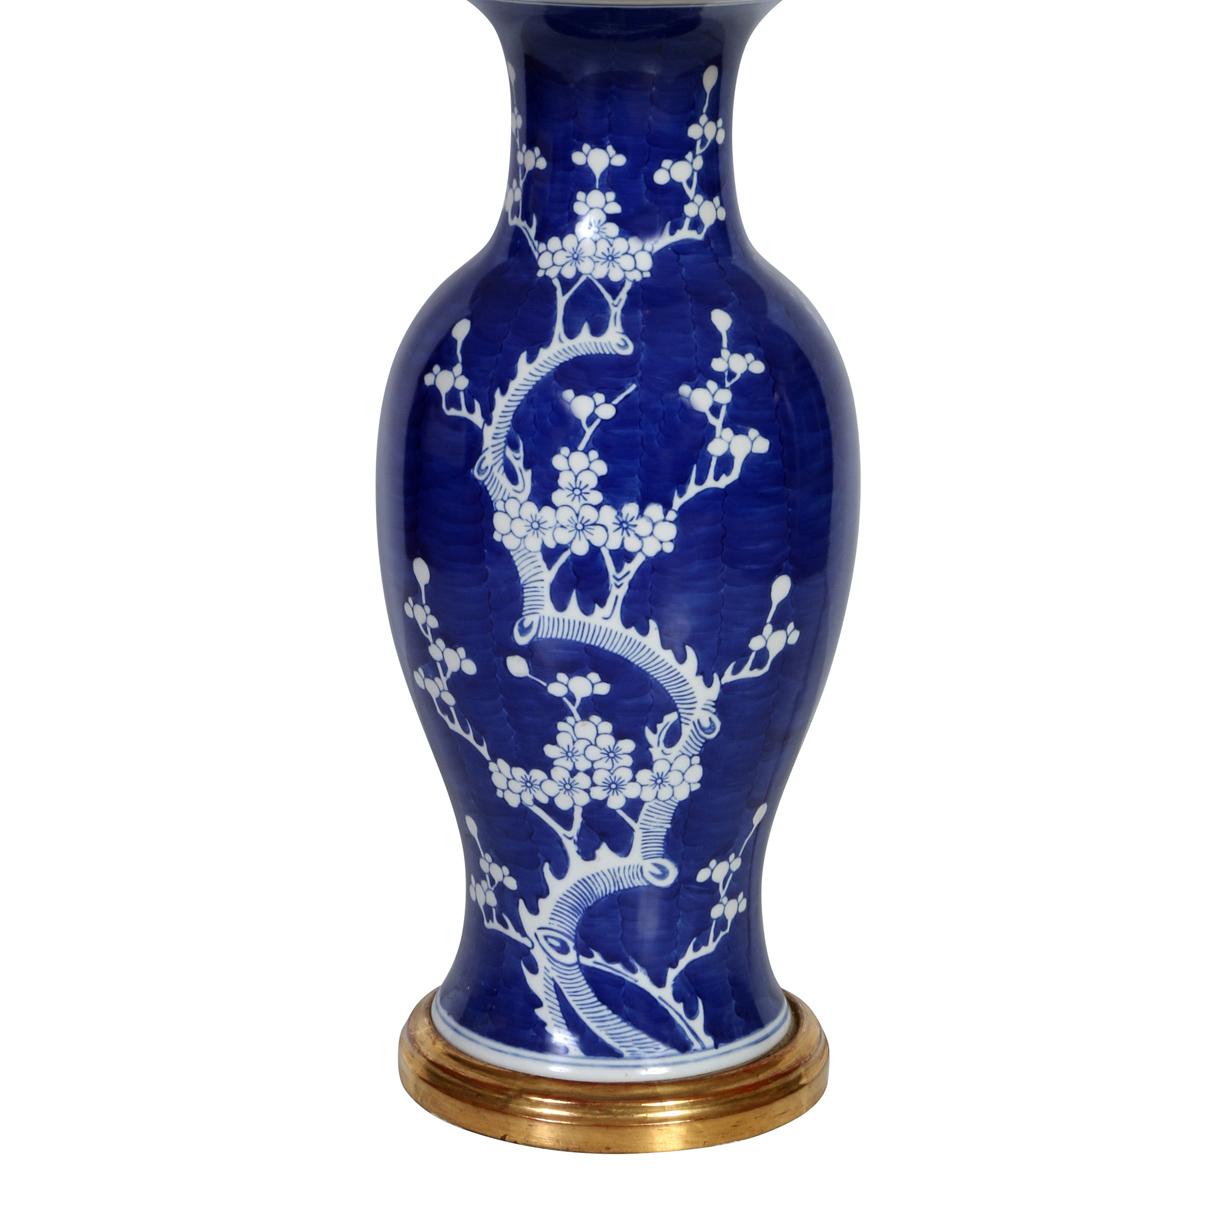 Paire de lampes d'exportation chinoises bleues et blanches reposant sur des bases en or 18 carats.  Les lampes bleues sont joliment décorées de branches, de feuilles et de fleurs blanches. Une superbe paire de lampes de table de style chinois.  Les